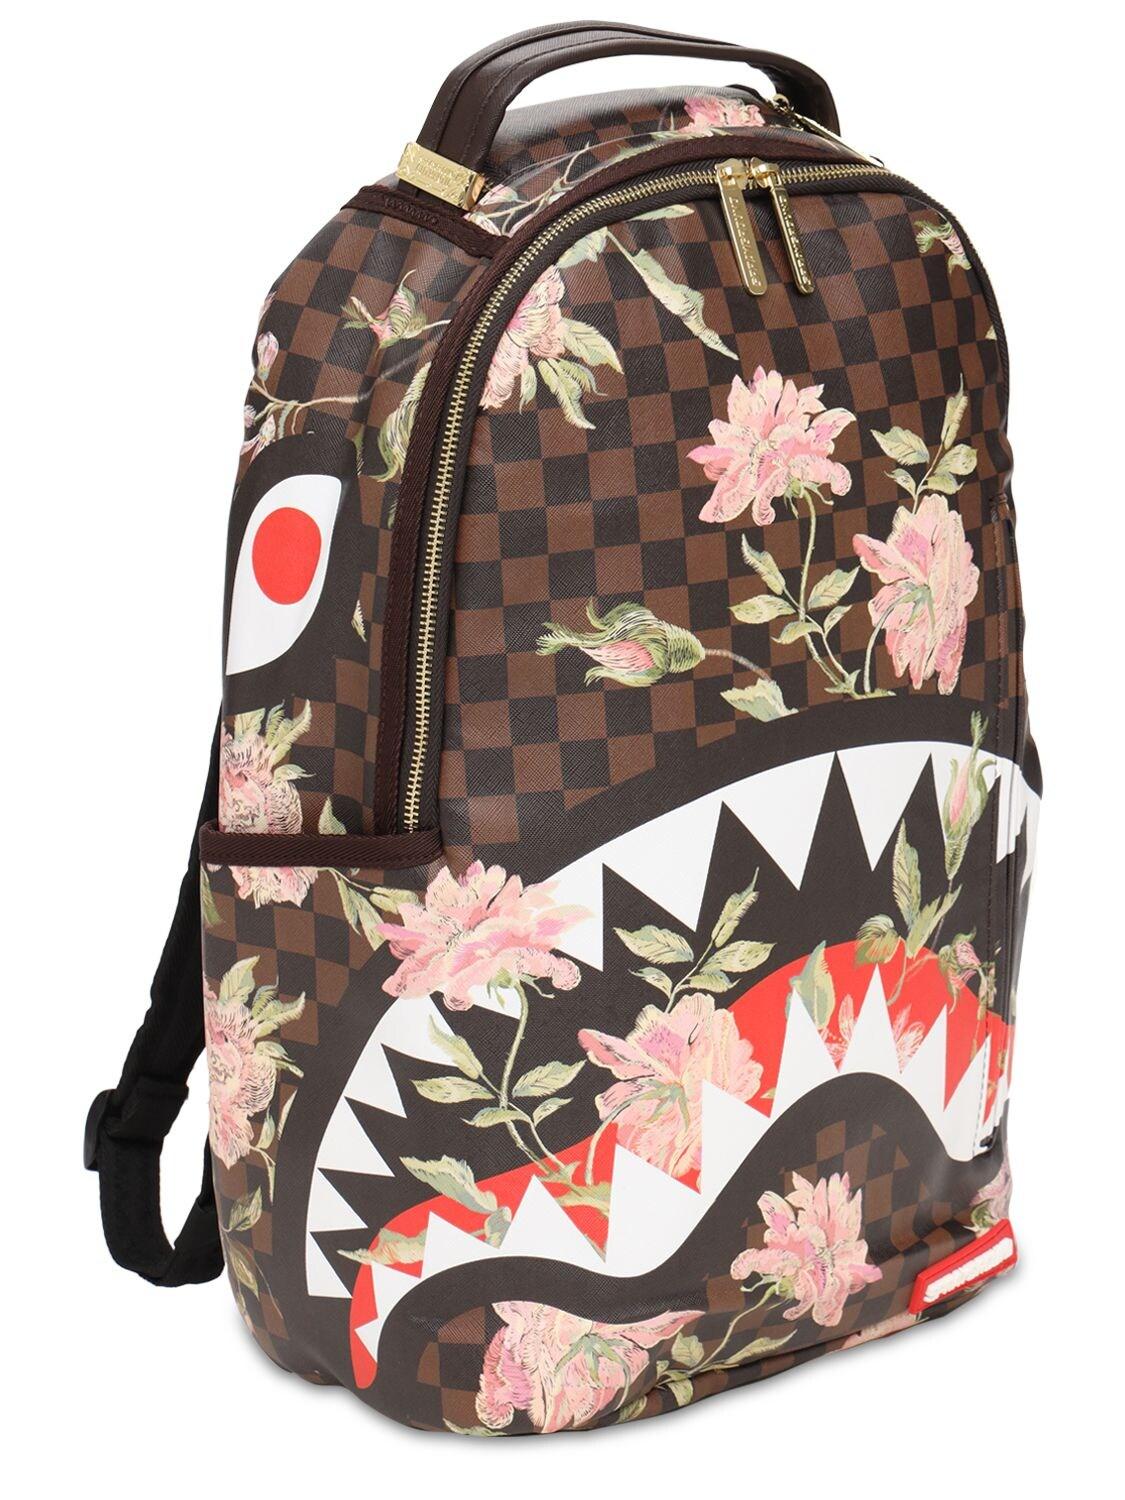 Sprayground Shark Flower Backpack for Men